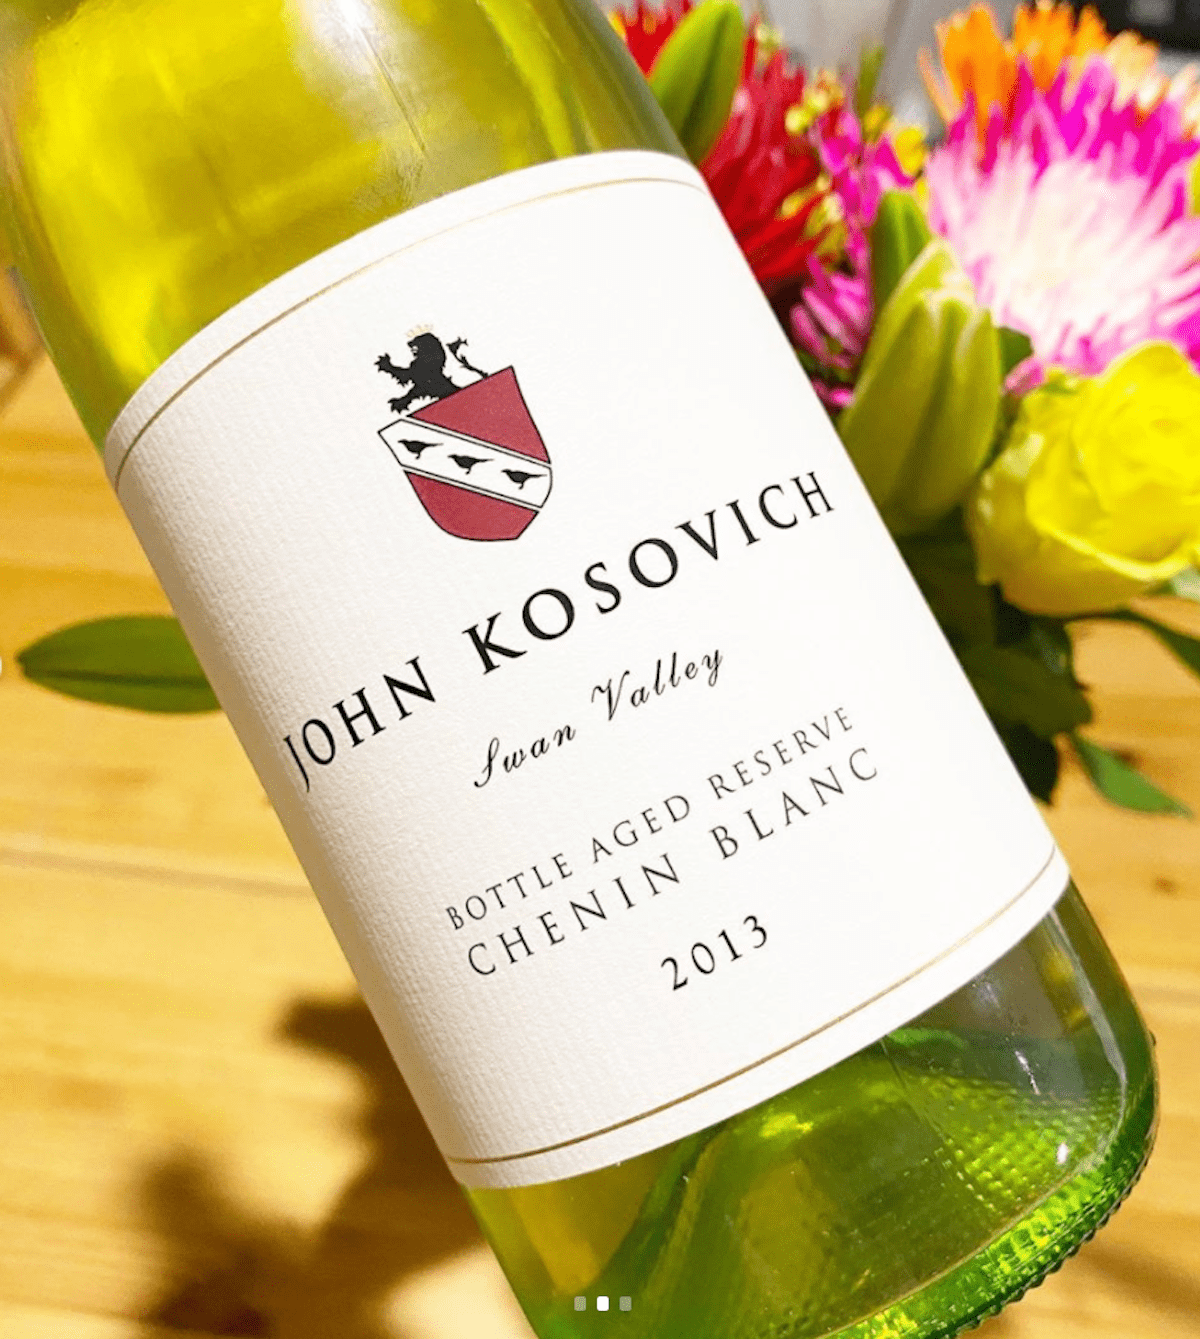 John Kosovich 2013 Bottle Aged Reserve Chenin Blanc